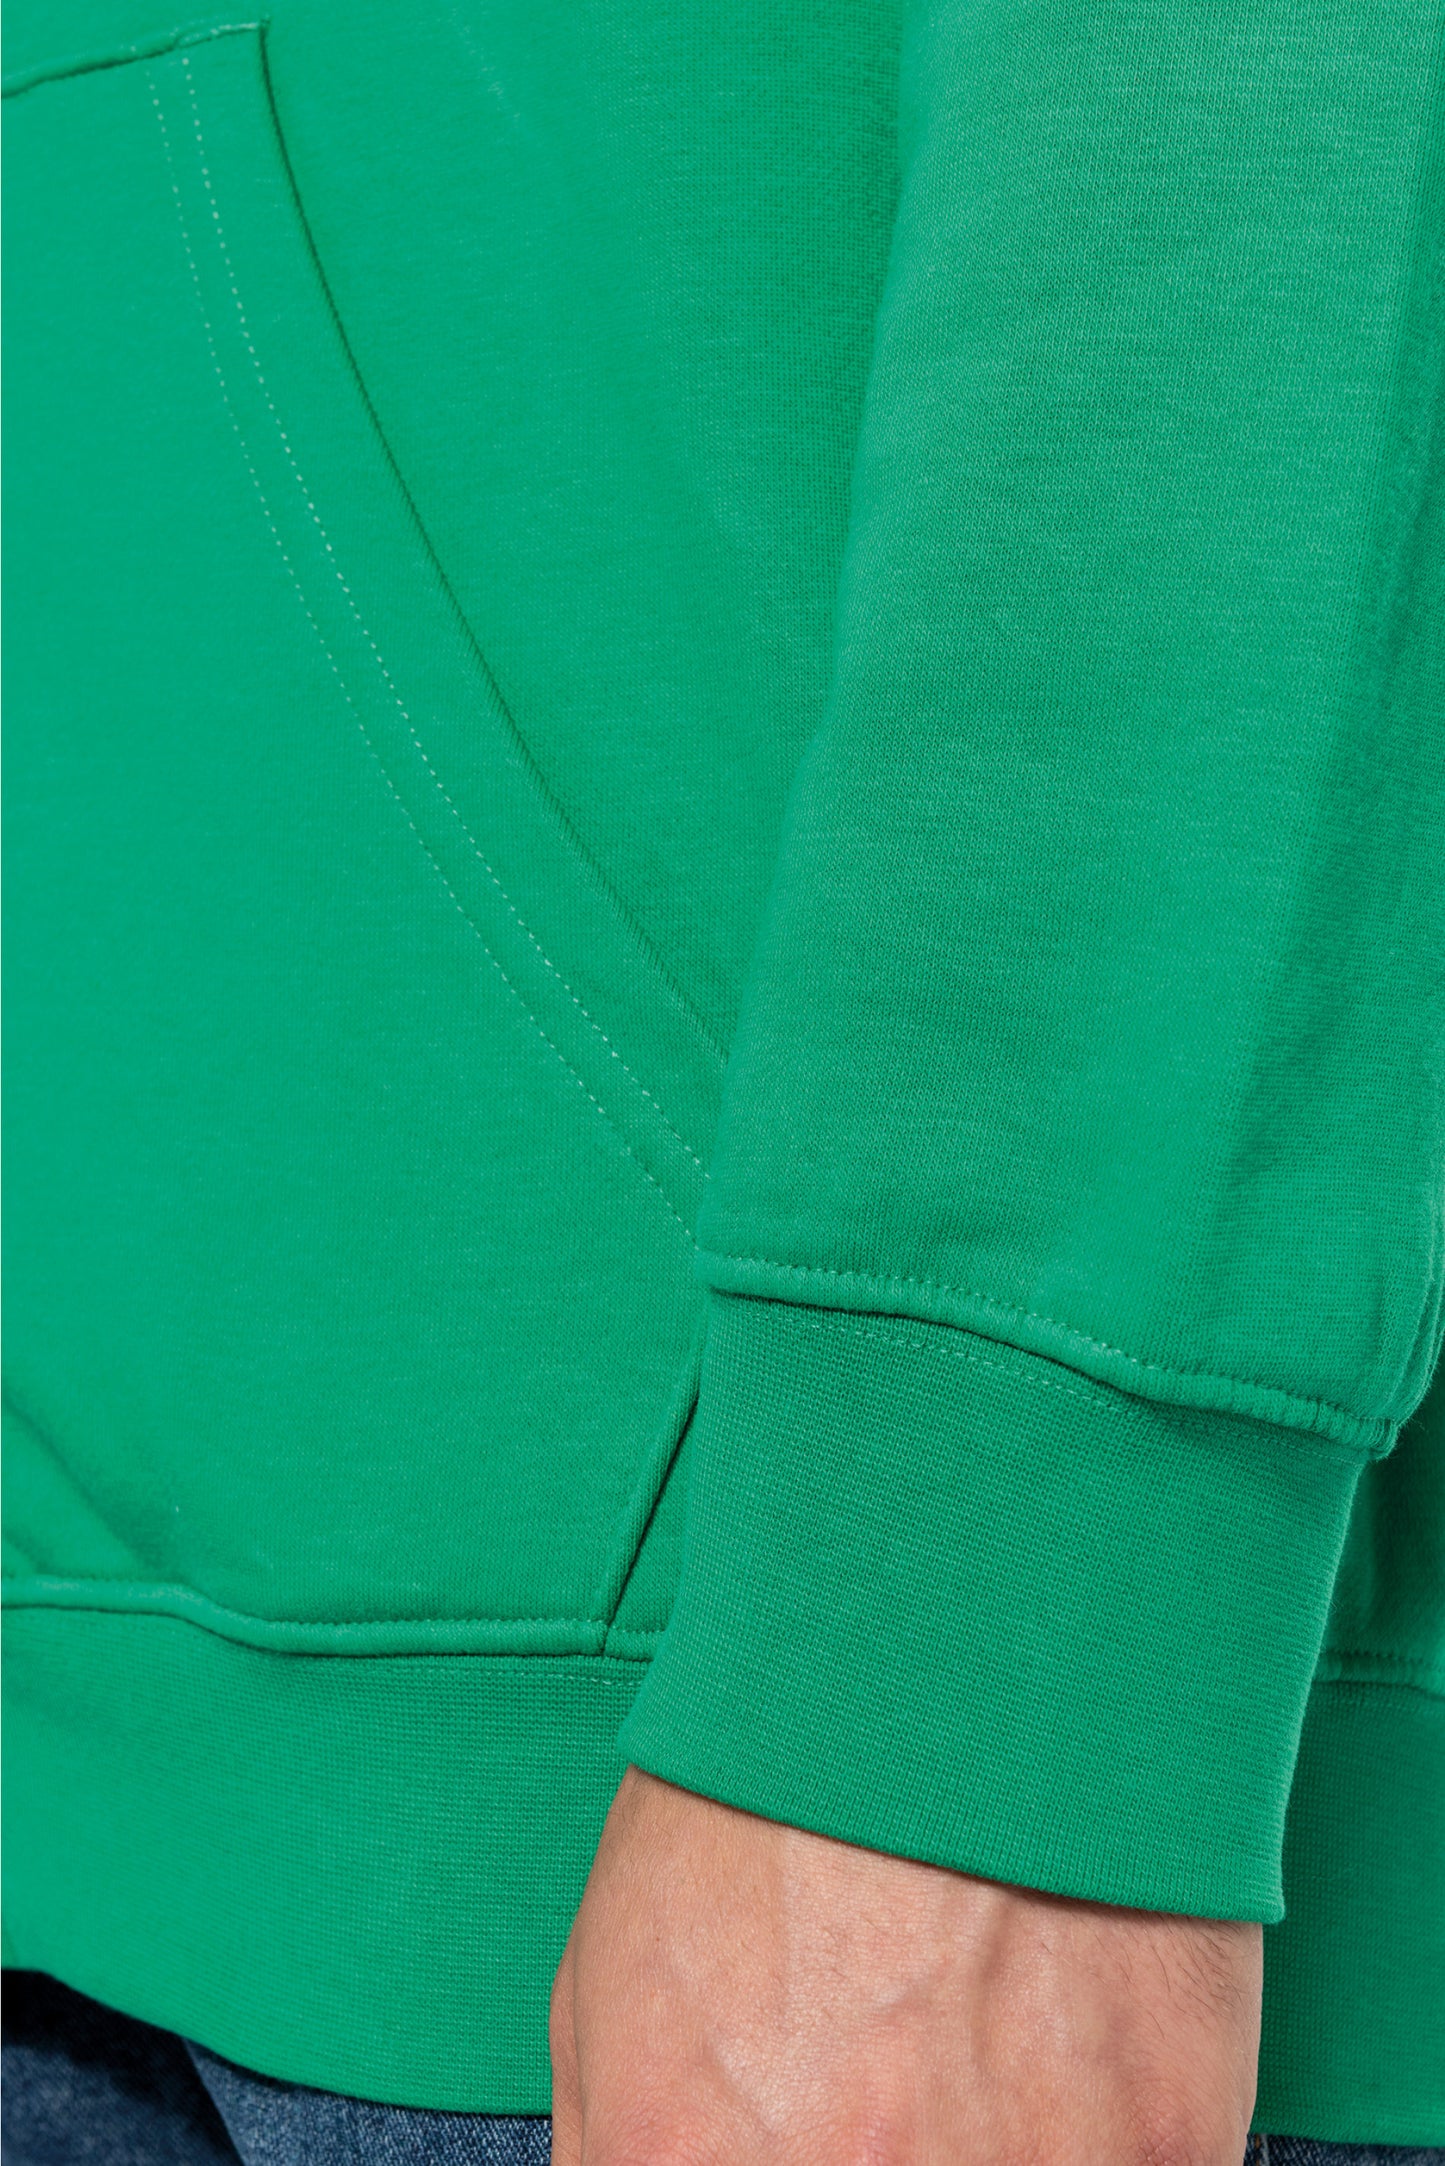 K466 - Sweat-shirt zippé capuche contrastée